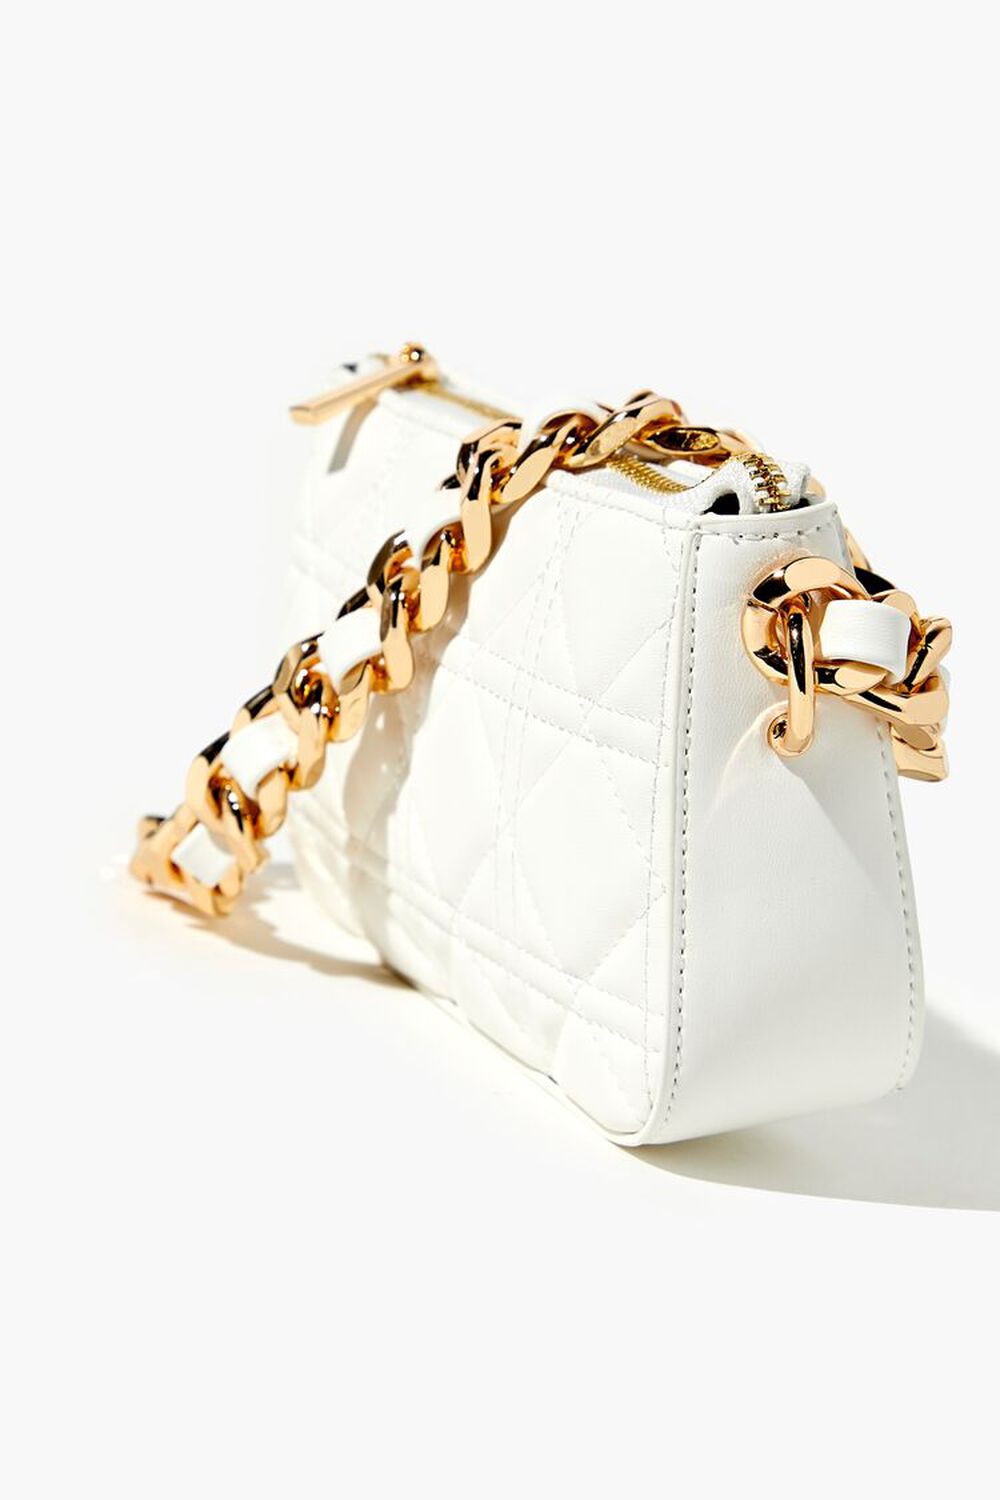 WHITE Quilted Baguette Shoulder Bag, image 2